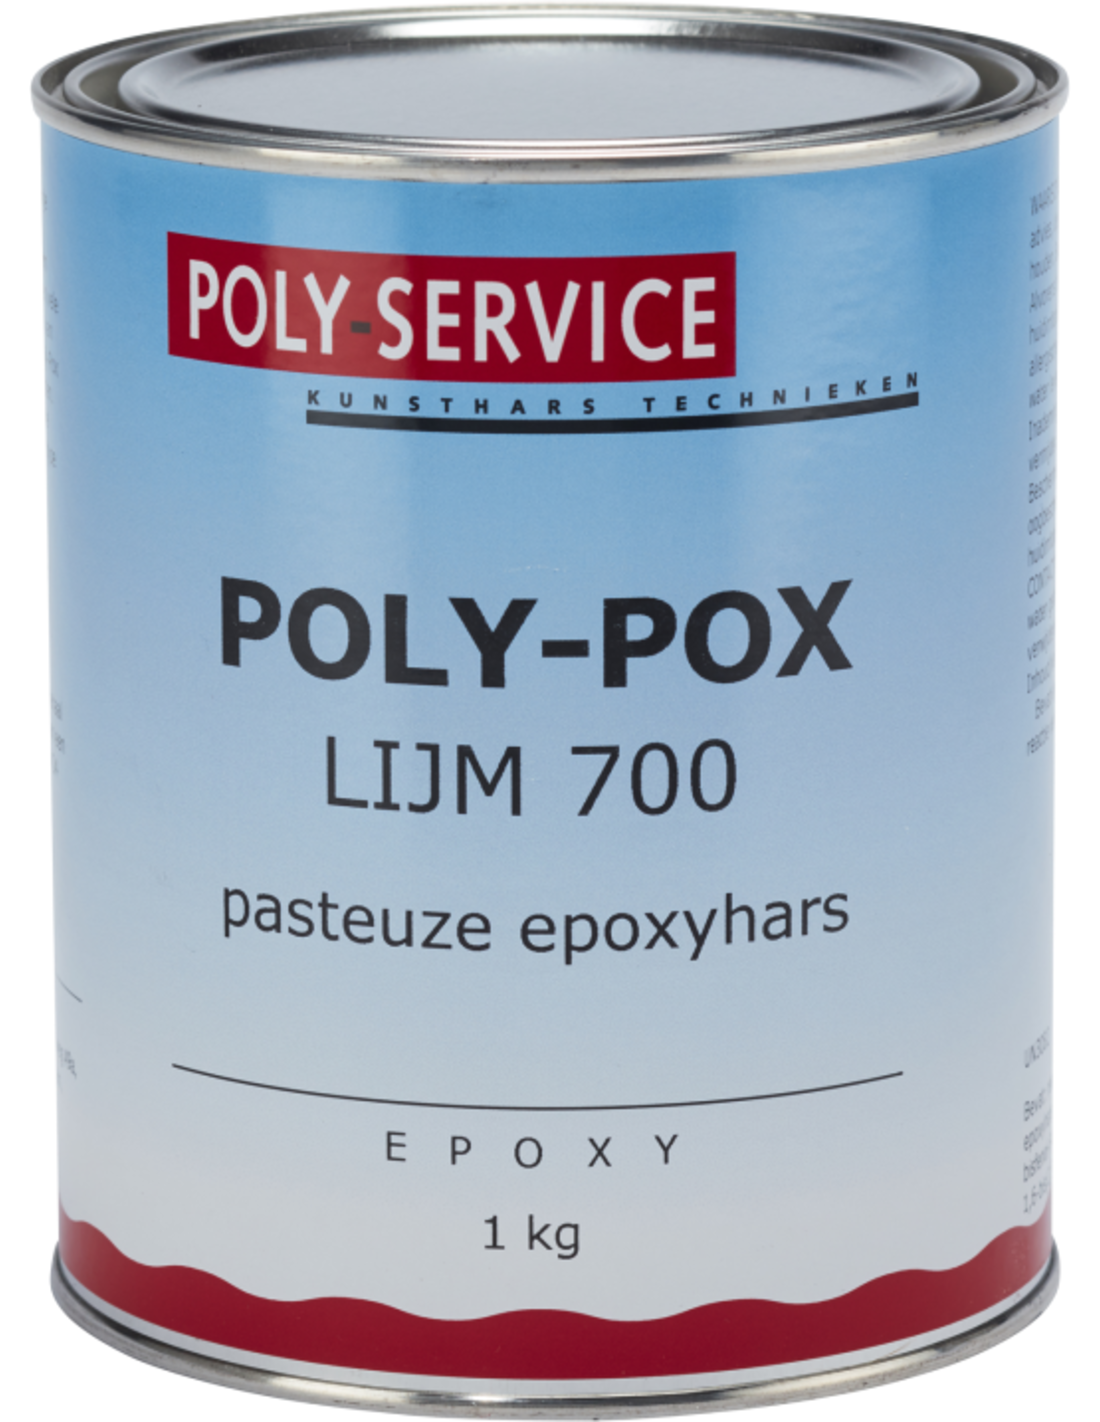 Bestand:Lijm-700-pasteuze-epoxyhars.png